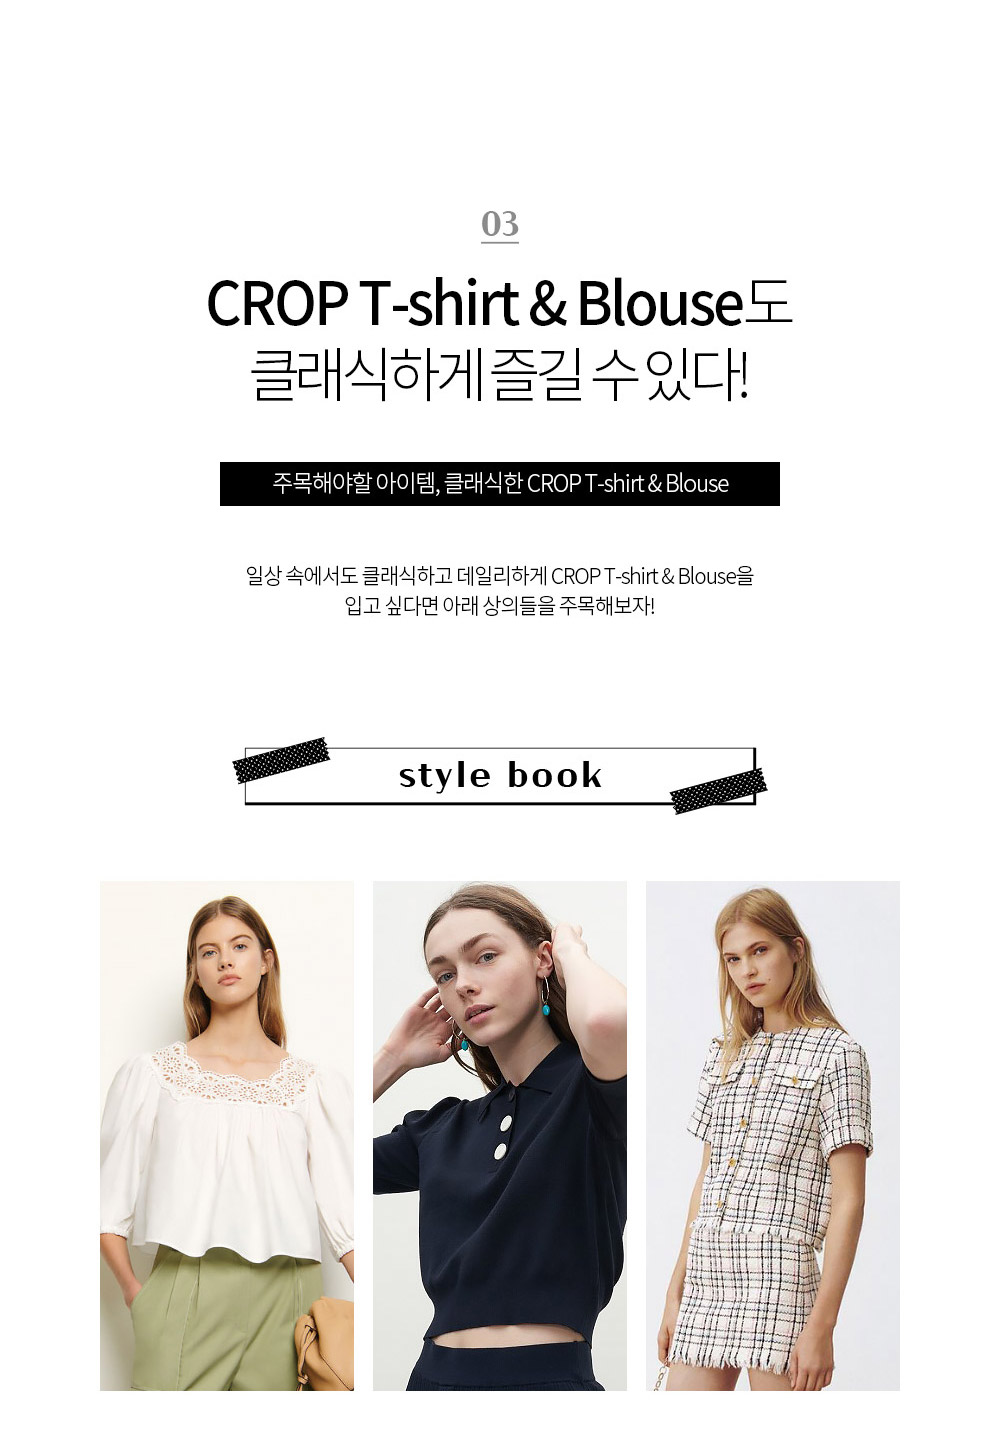 3.CROP T-shirt